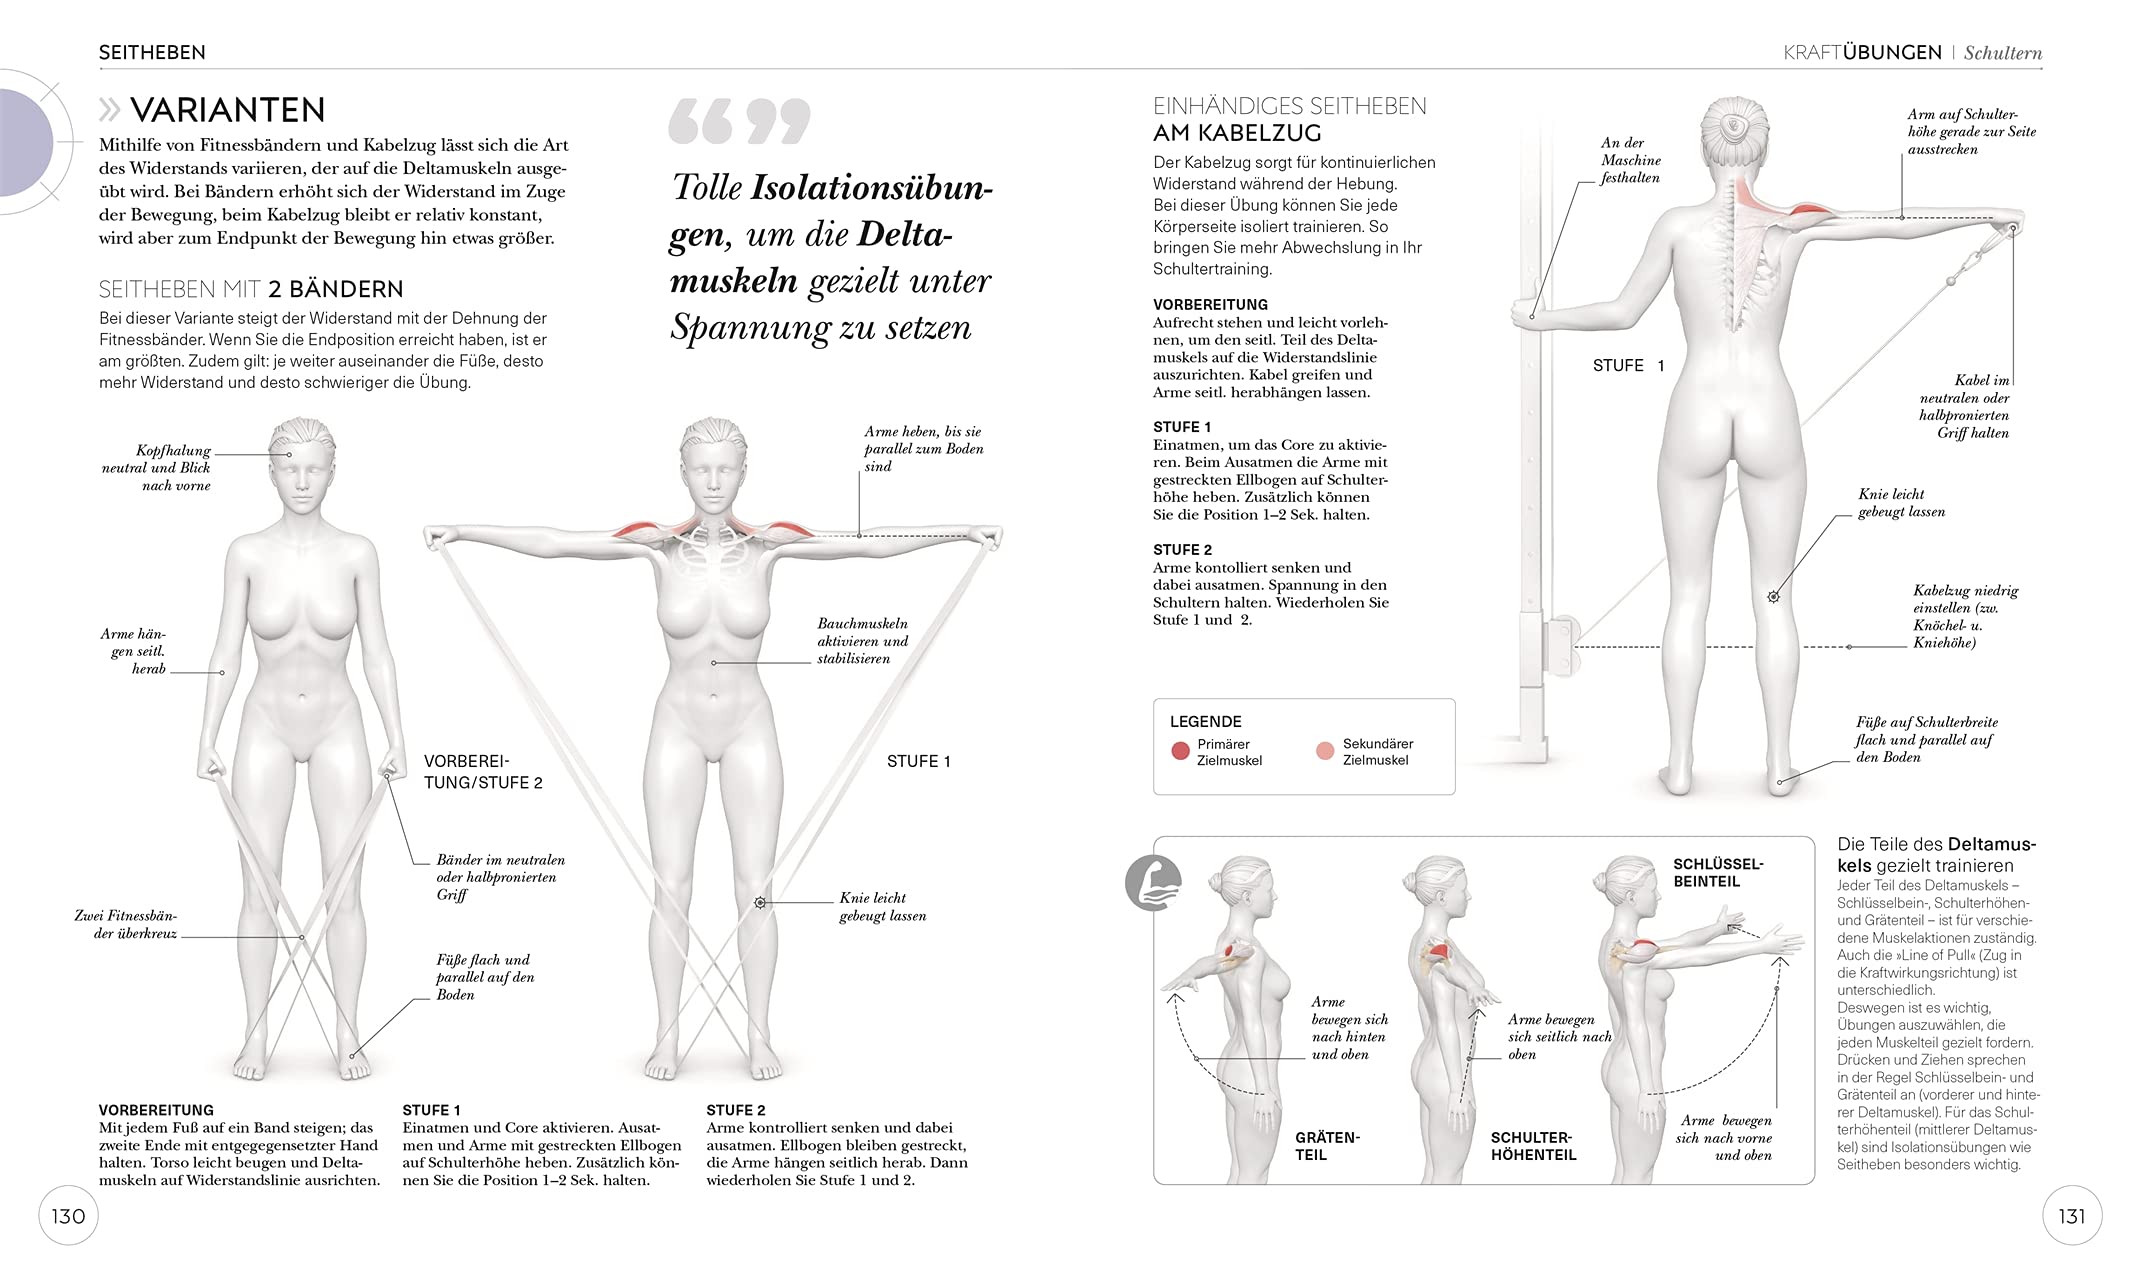 Krafttraining – Die Anatomie verstehen: Mit Übungen zum gezielten Muskelaufbau für einen definierten Körper